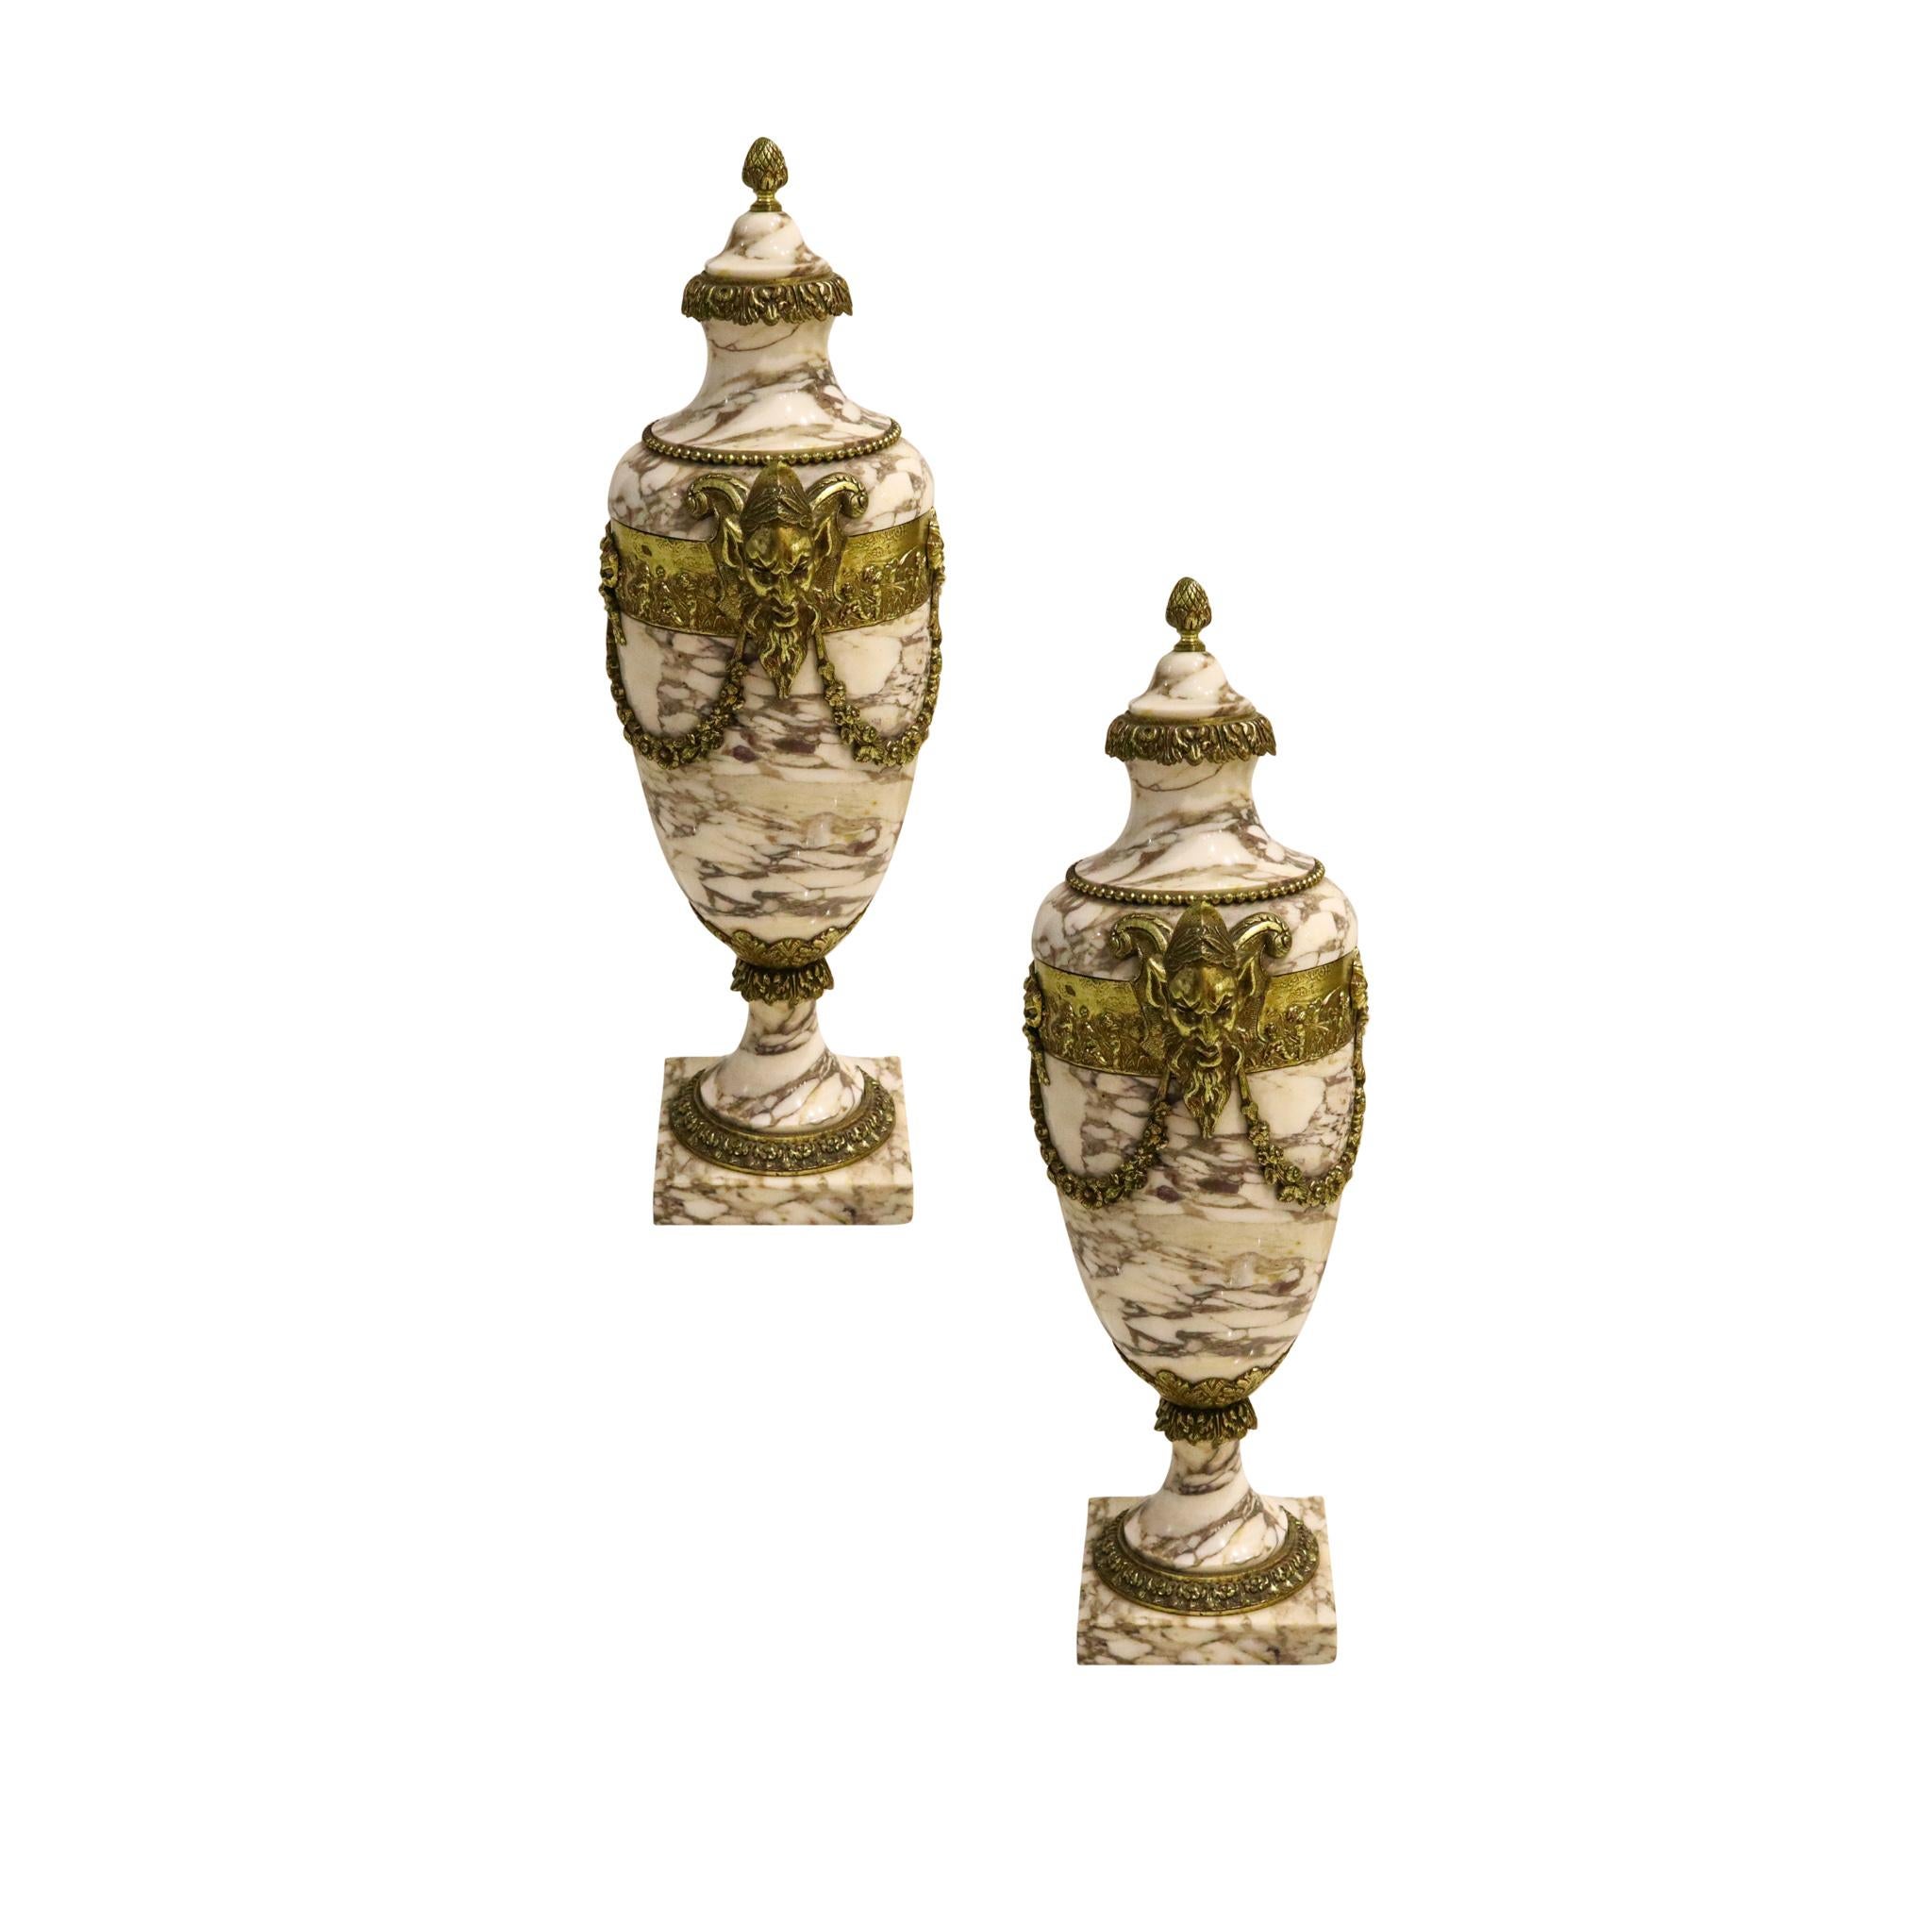 Paar mythologische Urnen aus der Zeit des dritten französischen Kaiserreichs.

Fabelhafte dekorative Stücke, die in Paris, Frankreich, während der Zeit des Dritten Französischen Kaiserreichs unter Napoleon III. (1852-1870), um 1860, entstanden sind.